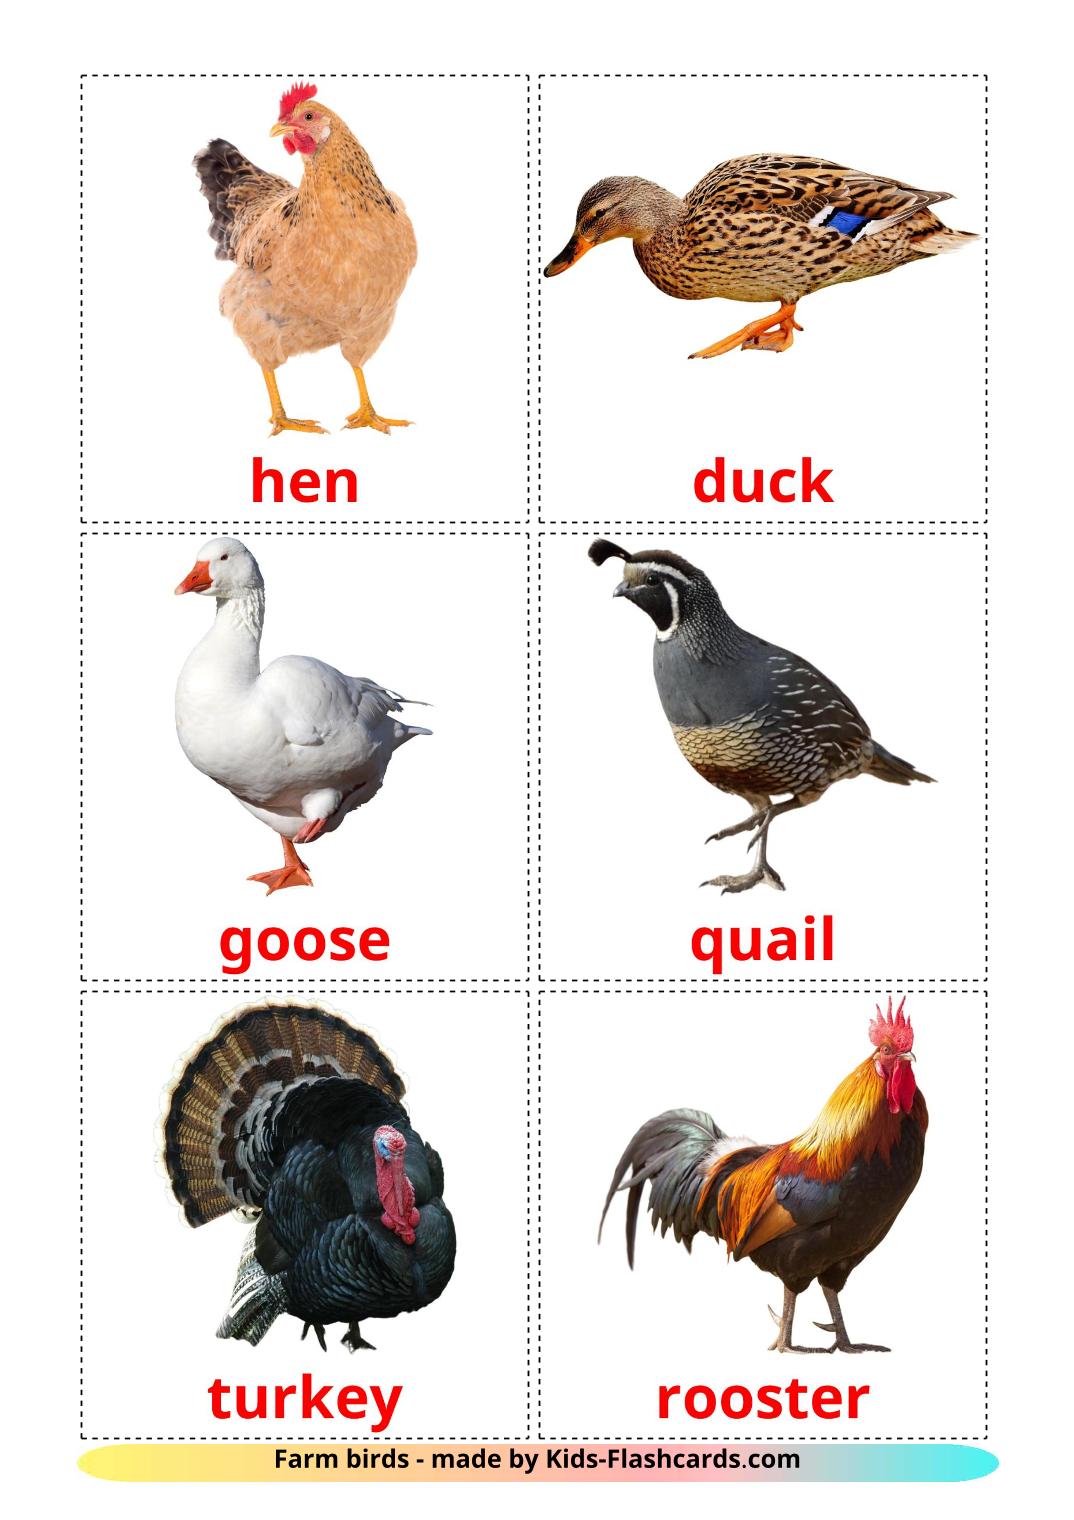 Les Oiseaux de Ferme - 11 Flashcards anglais imprimables gratuitement